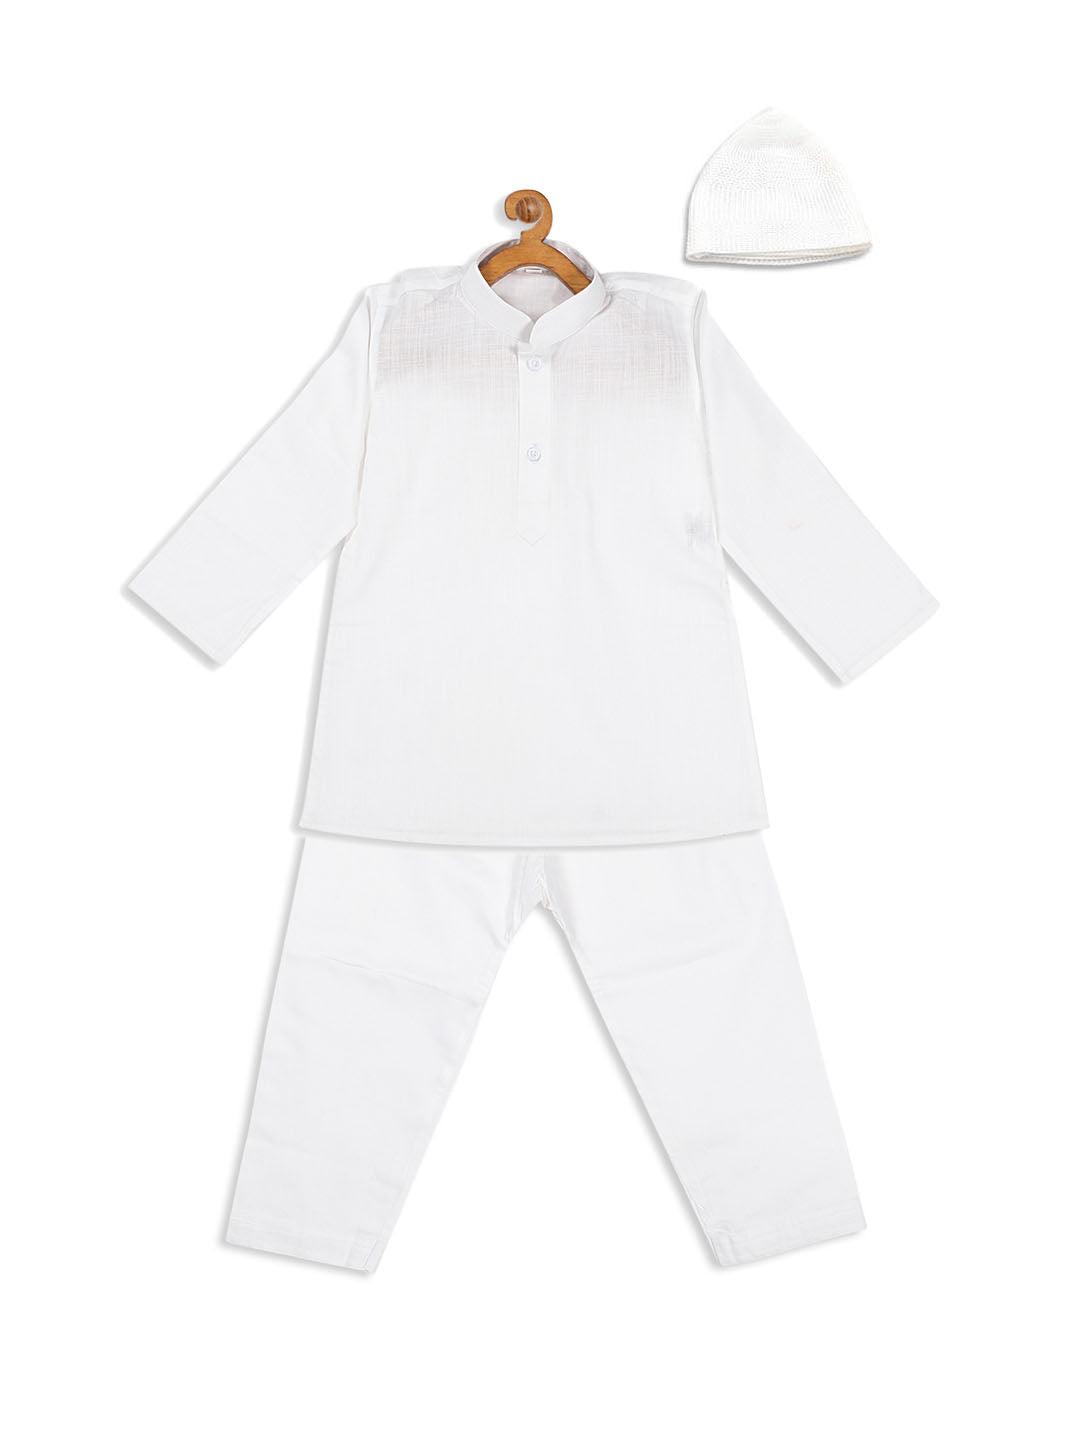 VASTRAMAY SISHU Boy's White Pure Cotton Kurta And Pyjama With Prayer Cap - Uboric